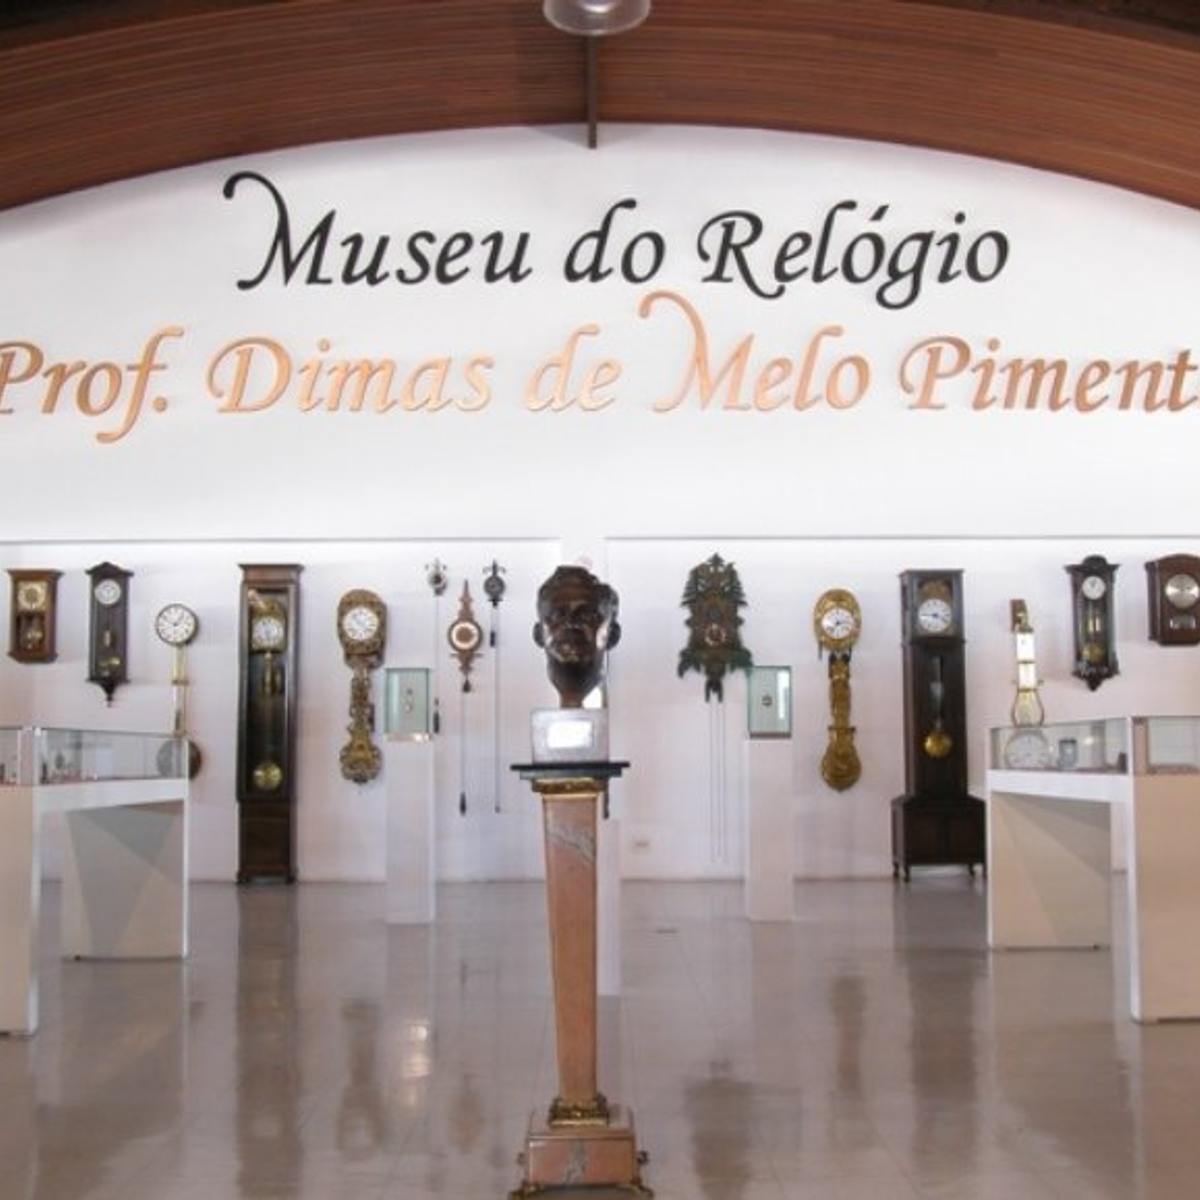 Le musée de l'horloge du professeur Dimas de melo pimenta